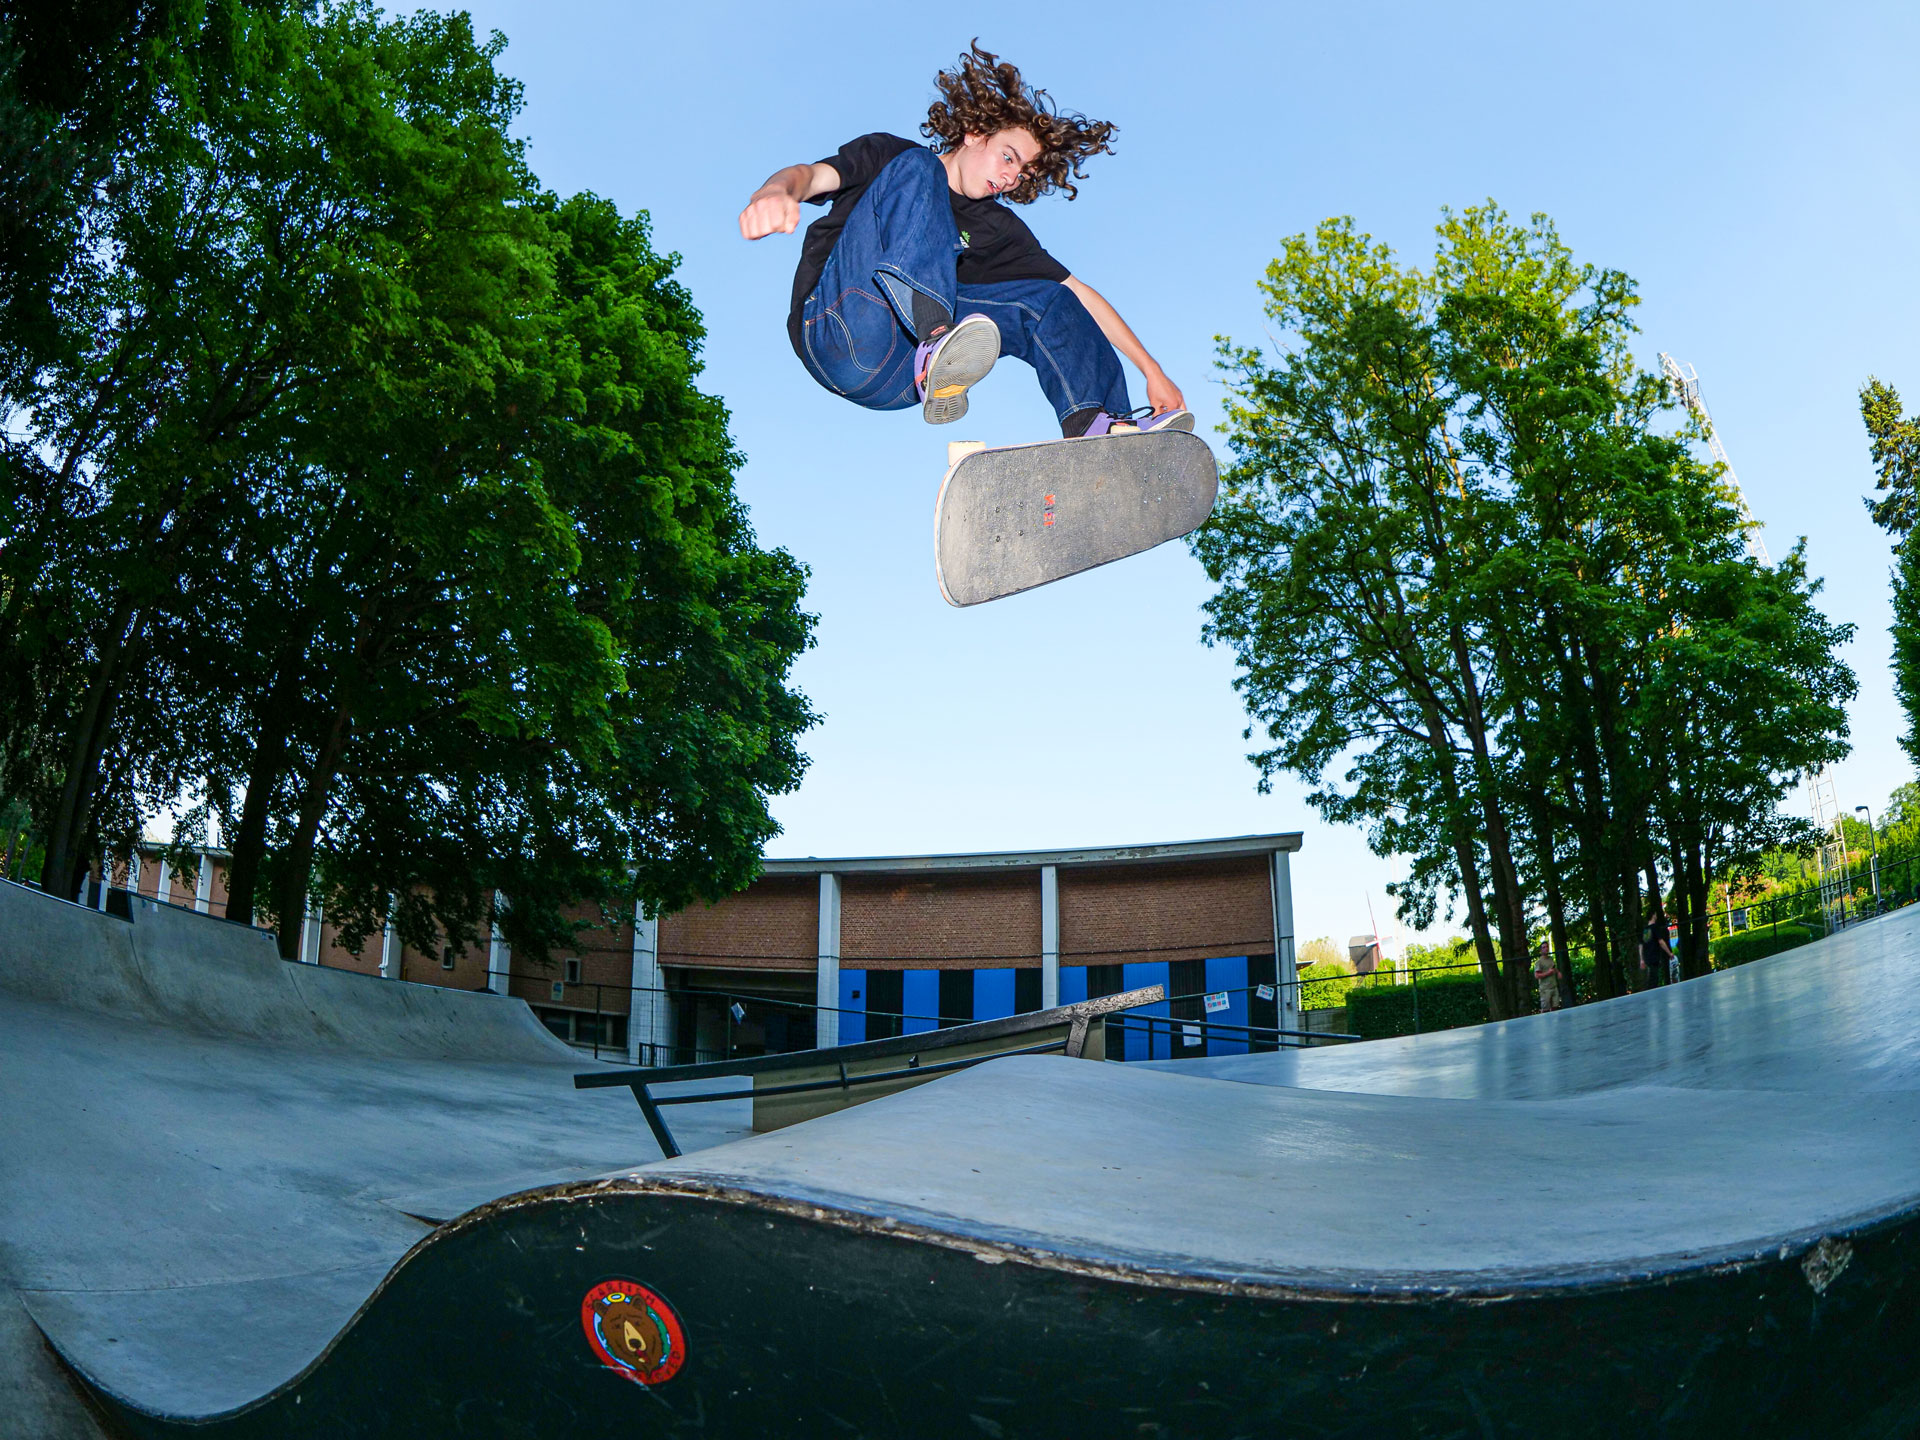 Kickflip Shifty by Hendrik Exelmans at Skatepark Diest Photo by Musti Esen